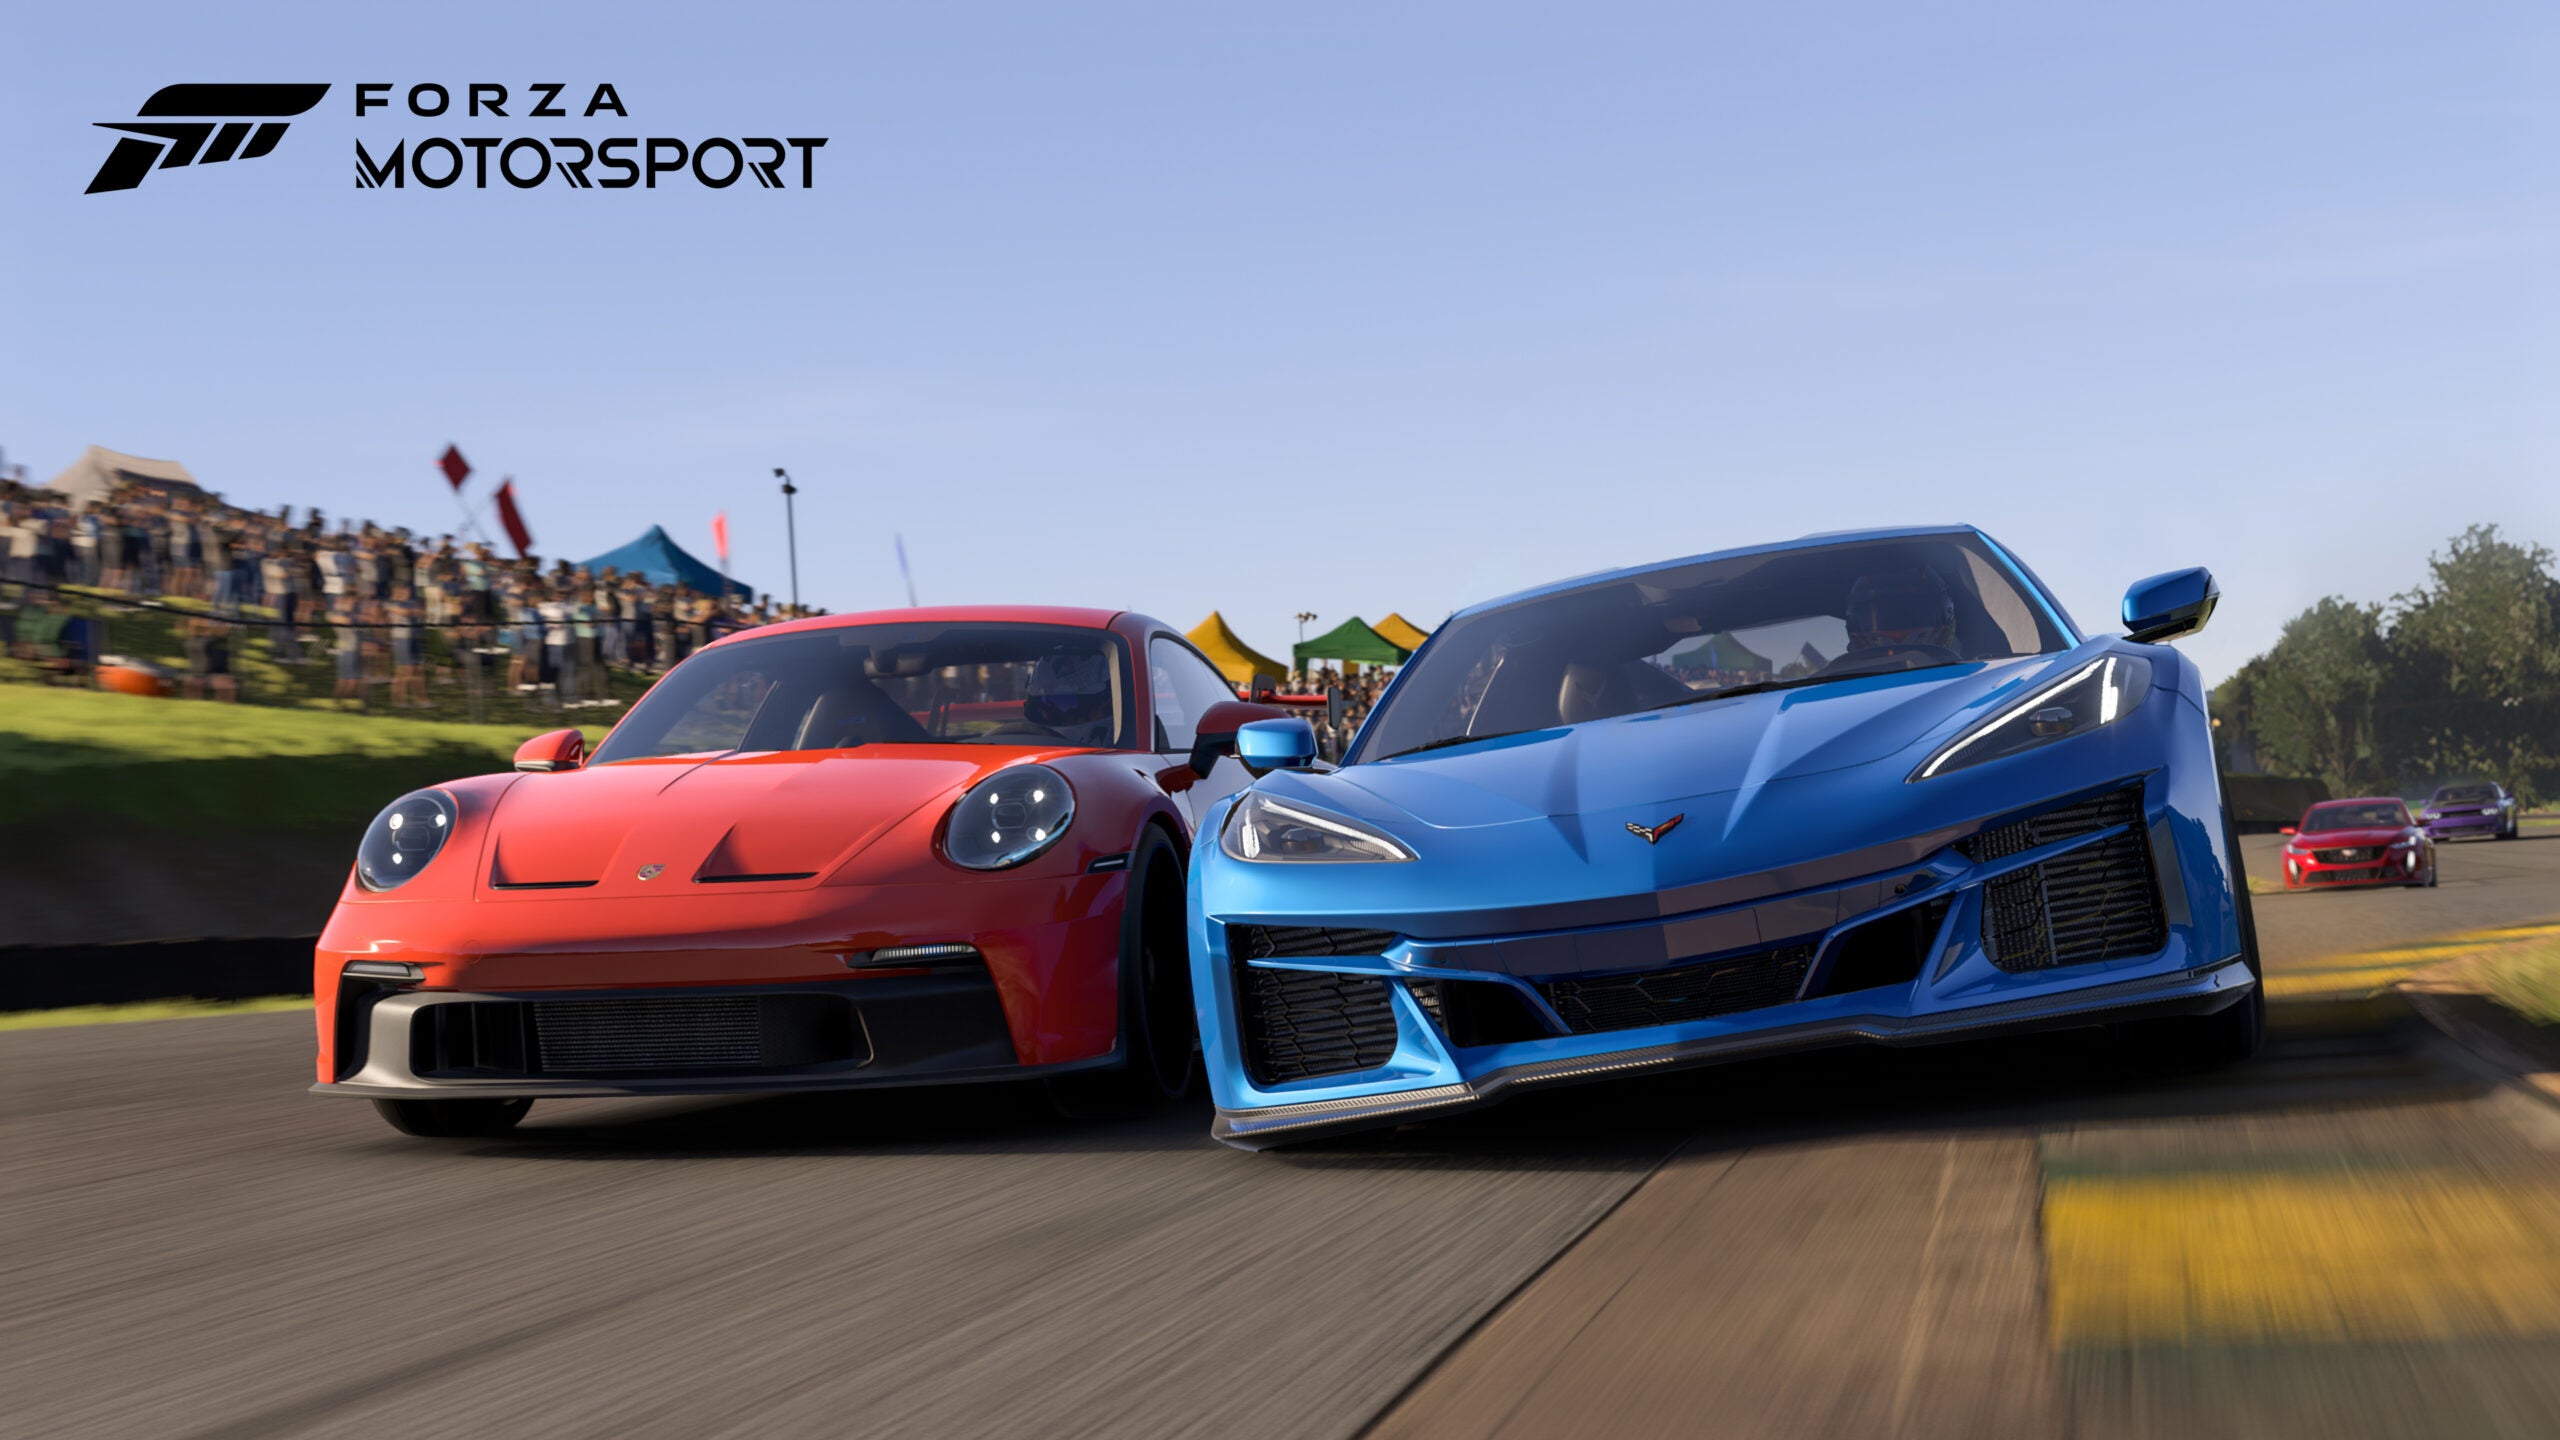 All the Porsche cars in Forza Horizon 5